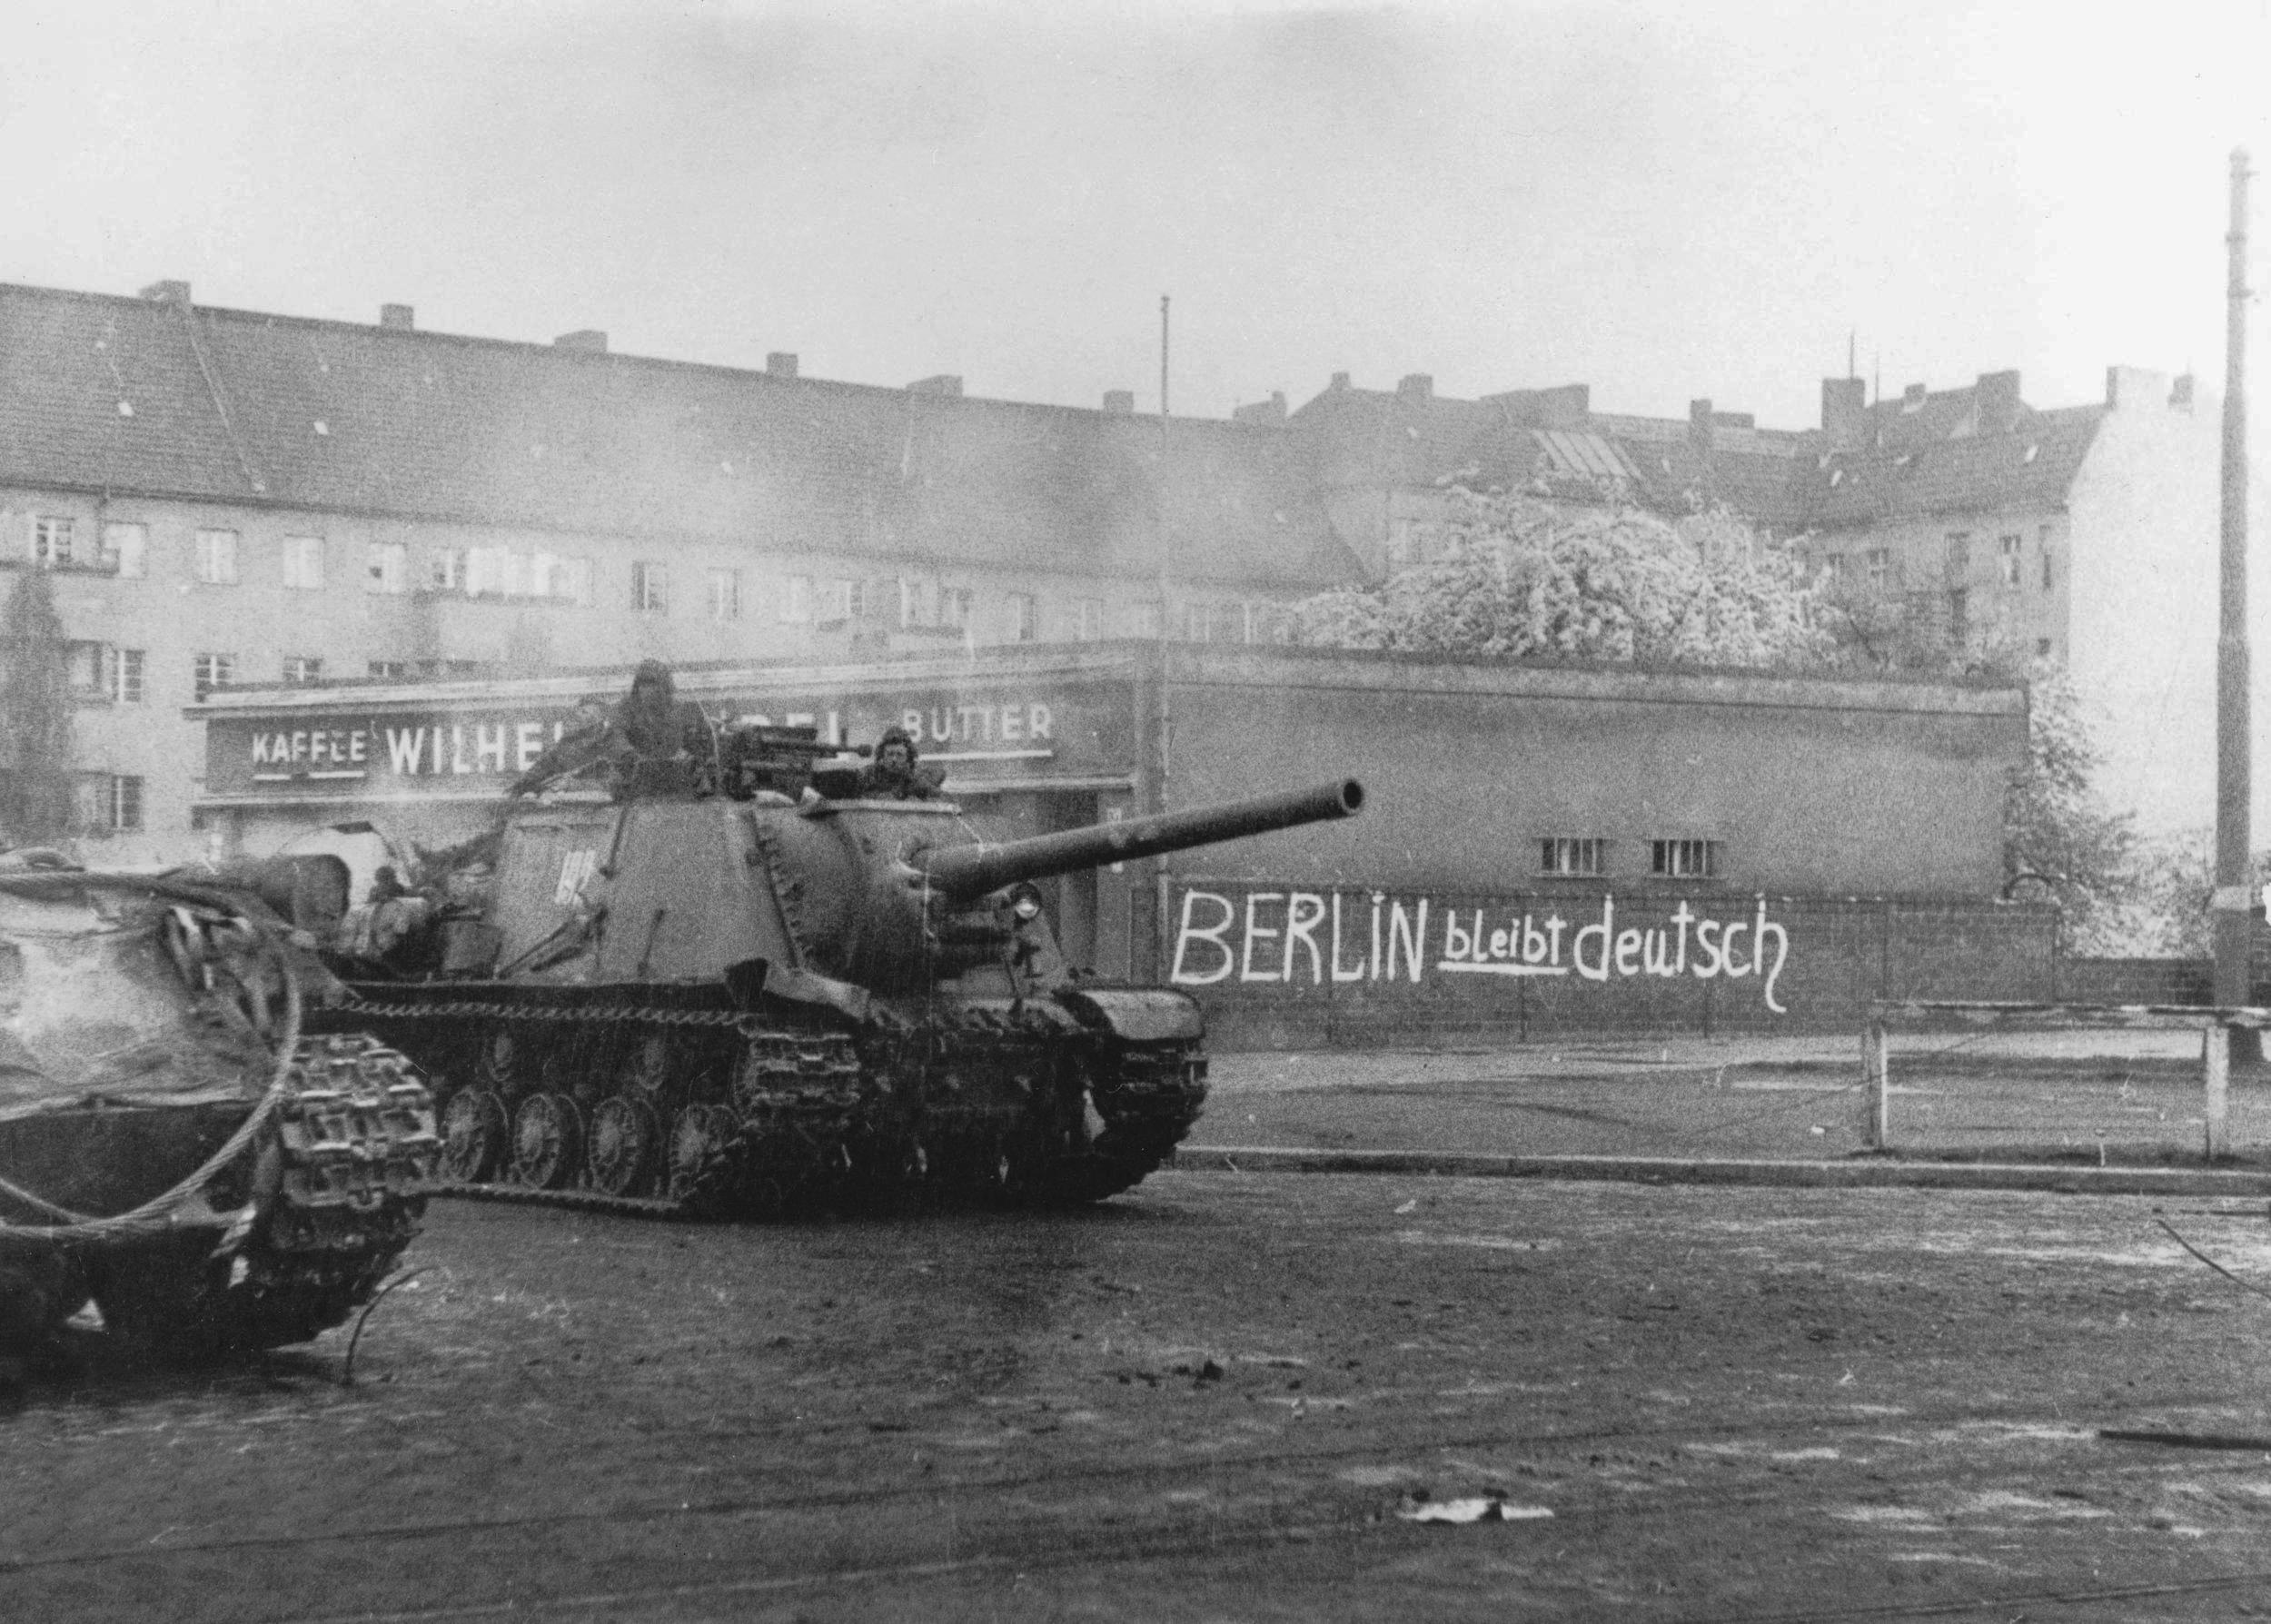 foto ISU-122 Berlin Bleibt Deutsch